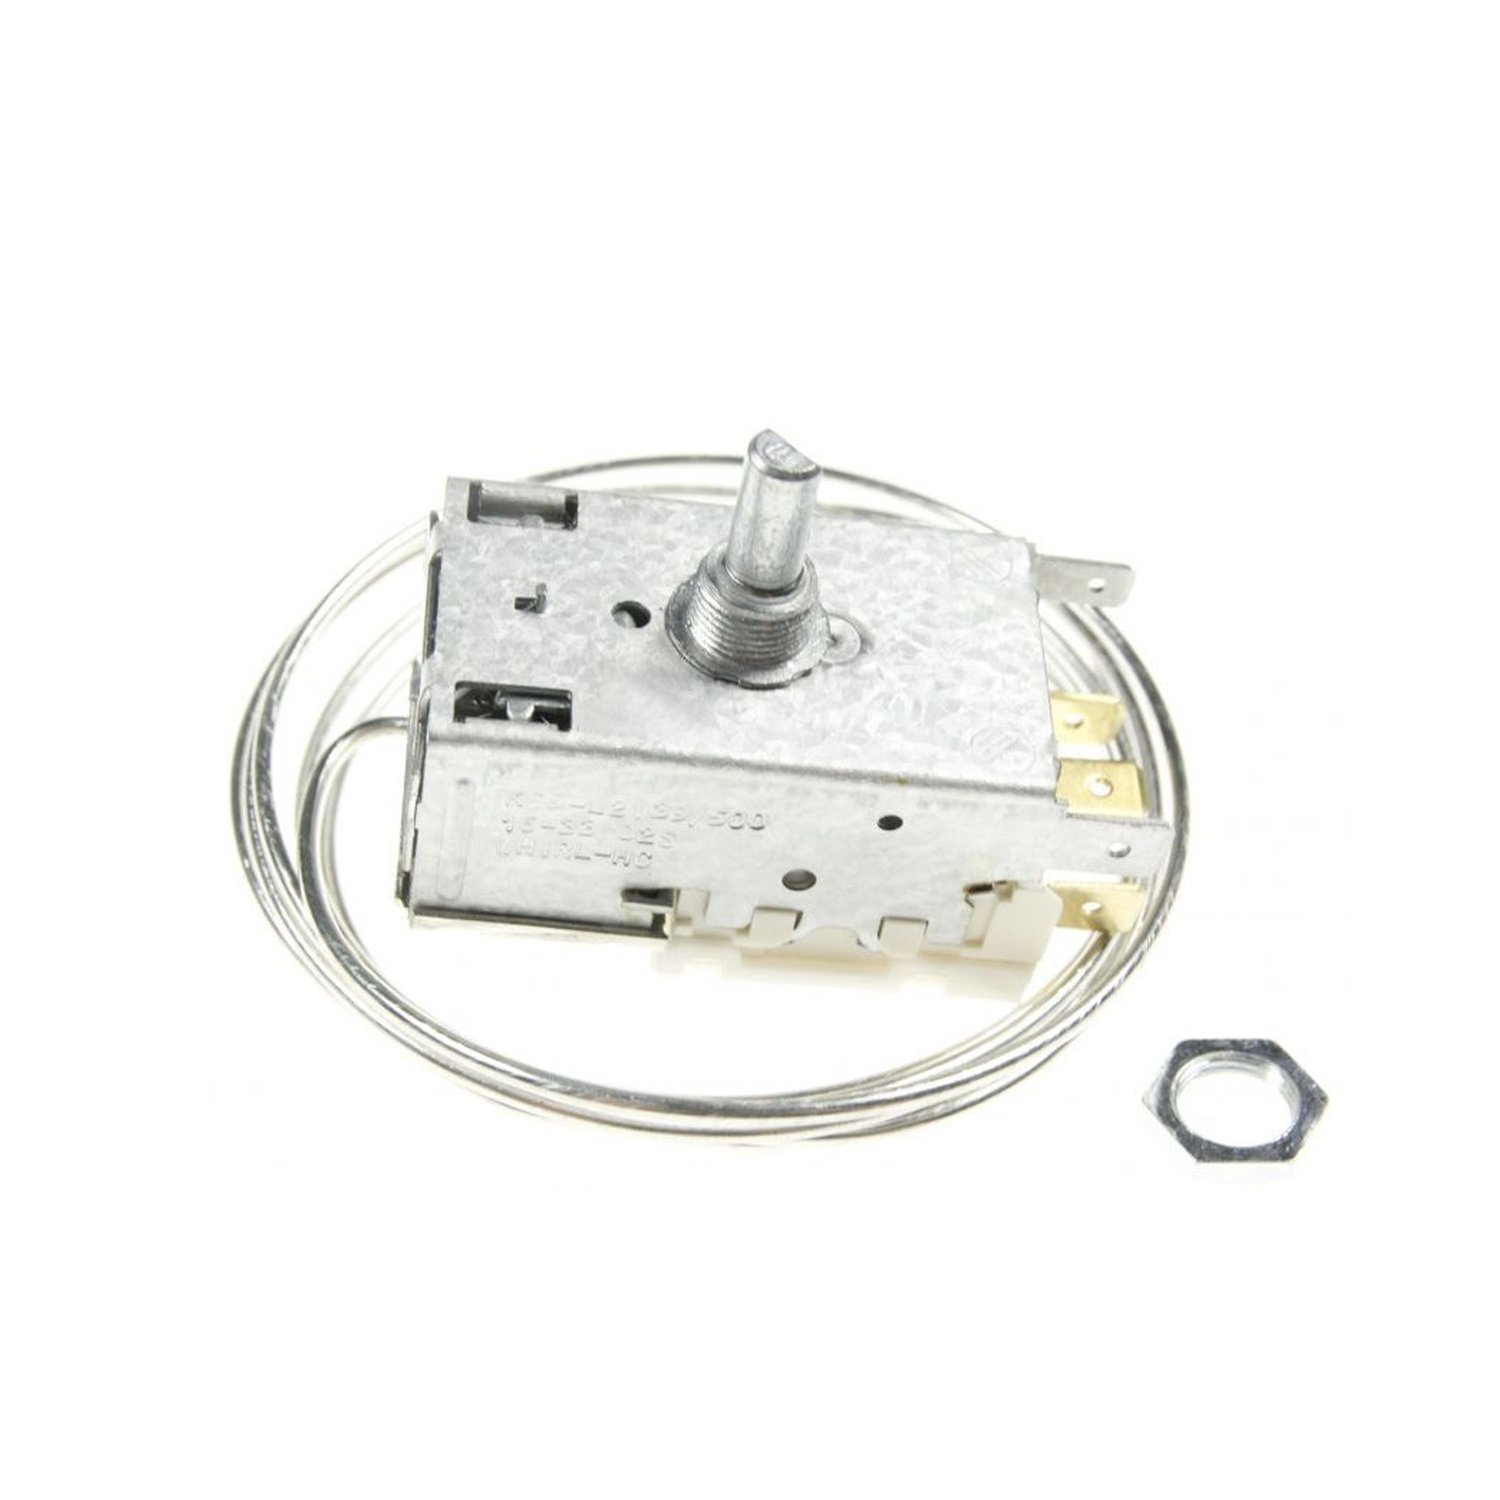 Thermostat Ranco K59-L2139500 für Kühlschrank ROBERTSHAW, L 1530 mm, 4,8mm AMP